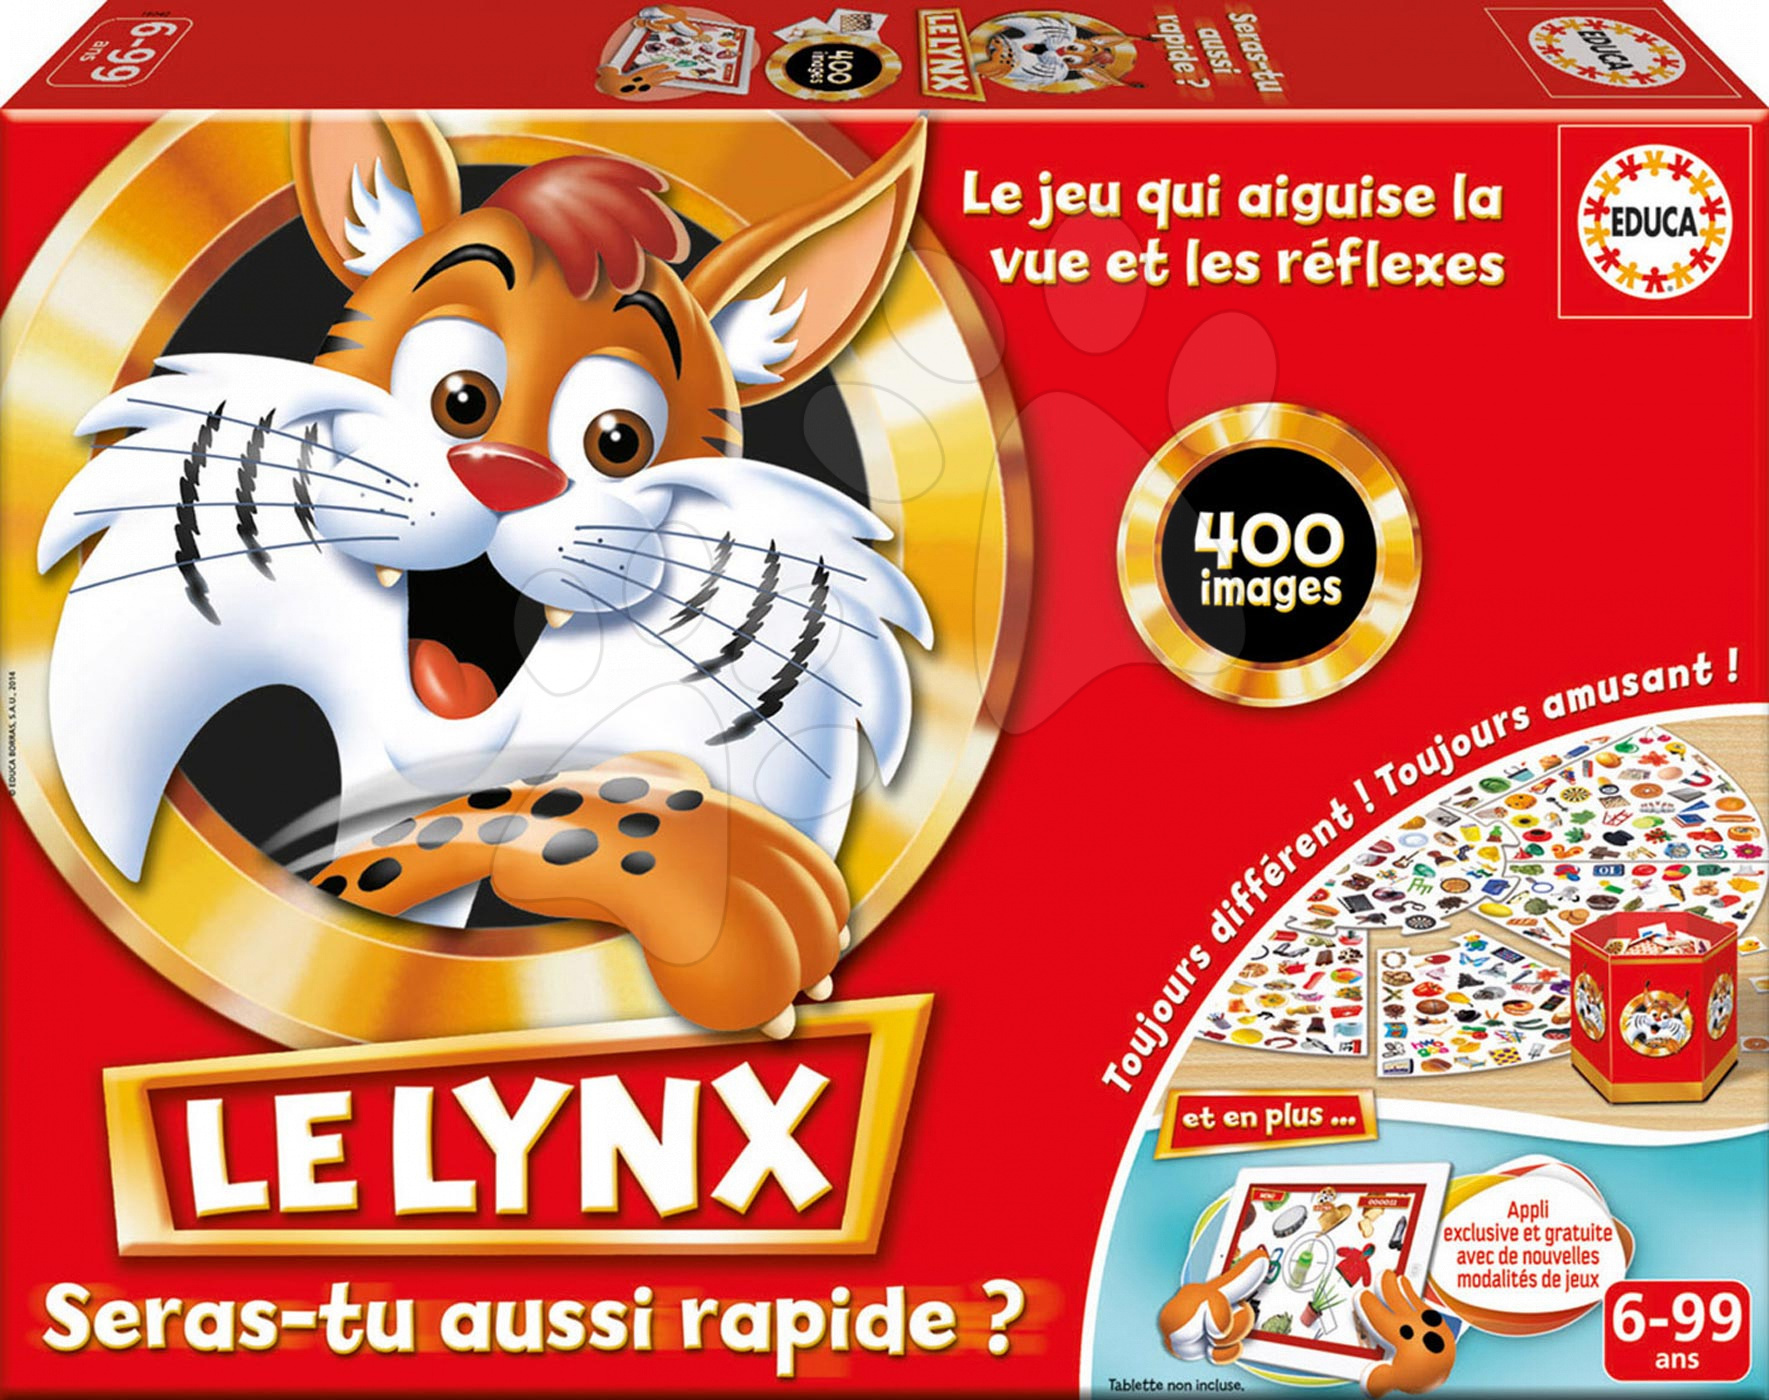 Cudzojazyčné spoločenské hry - Rodinná spoločenská hra Le Lynx Educa 400 obrázkov vo francúzštine od 6 rokov